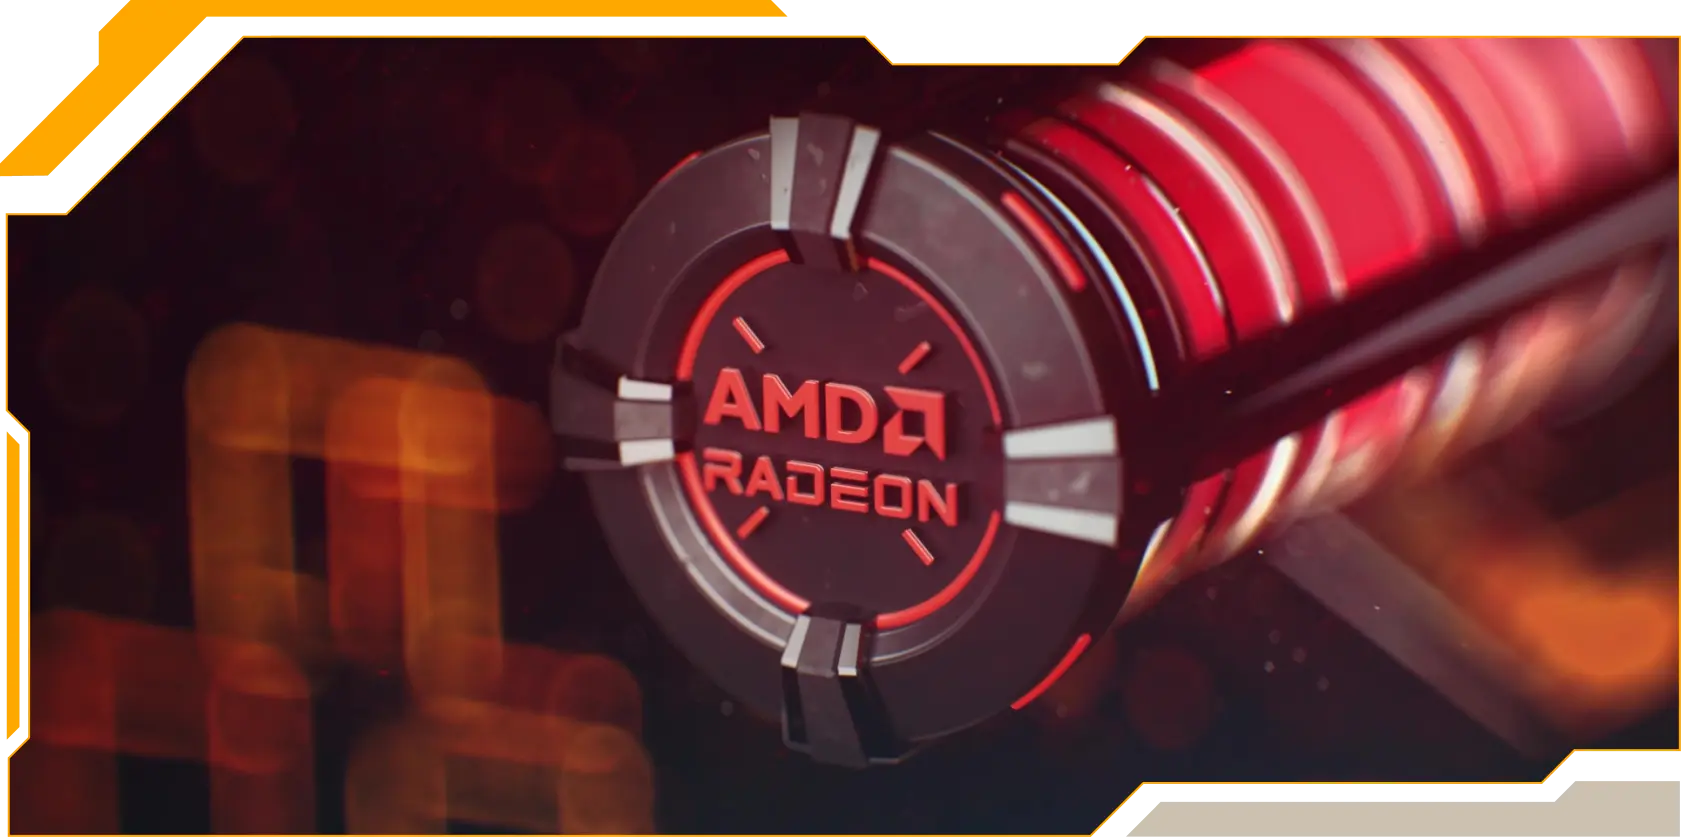 Tyylitelty 3D-kuva punaisella korostetusta näytönohjaimesta, jonka päällä lukee ”AMD RADEON”.